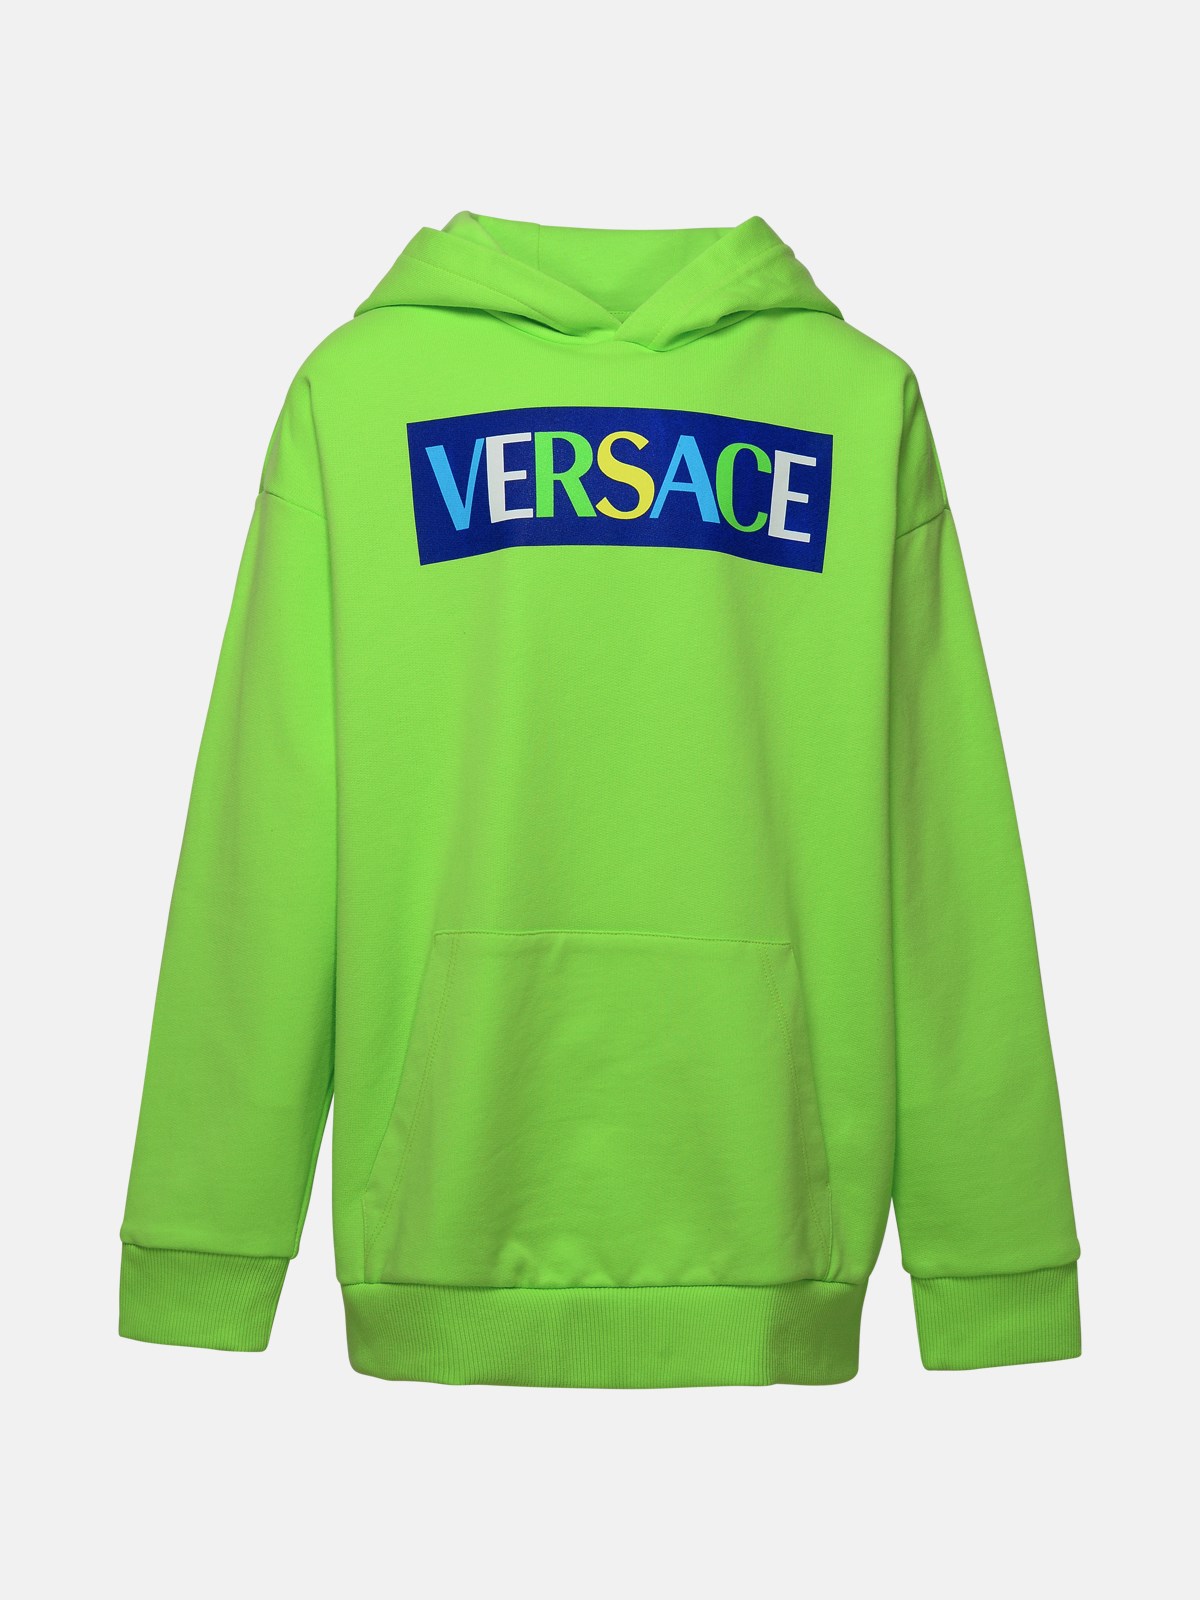 Versace Green Cotton Sweatshirt